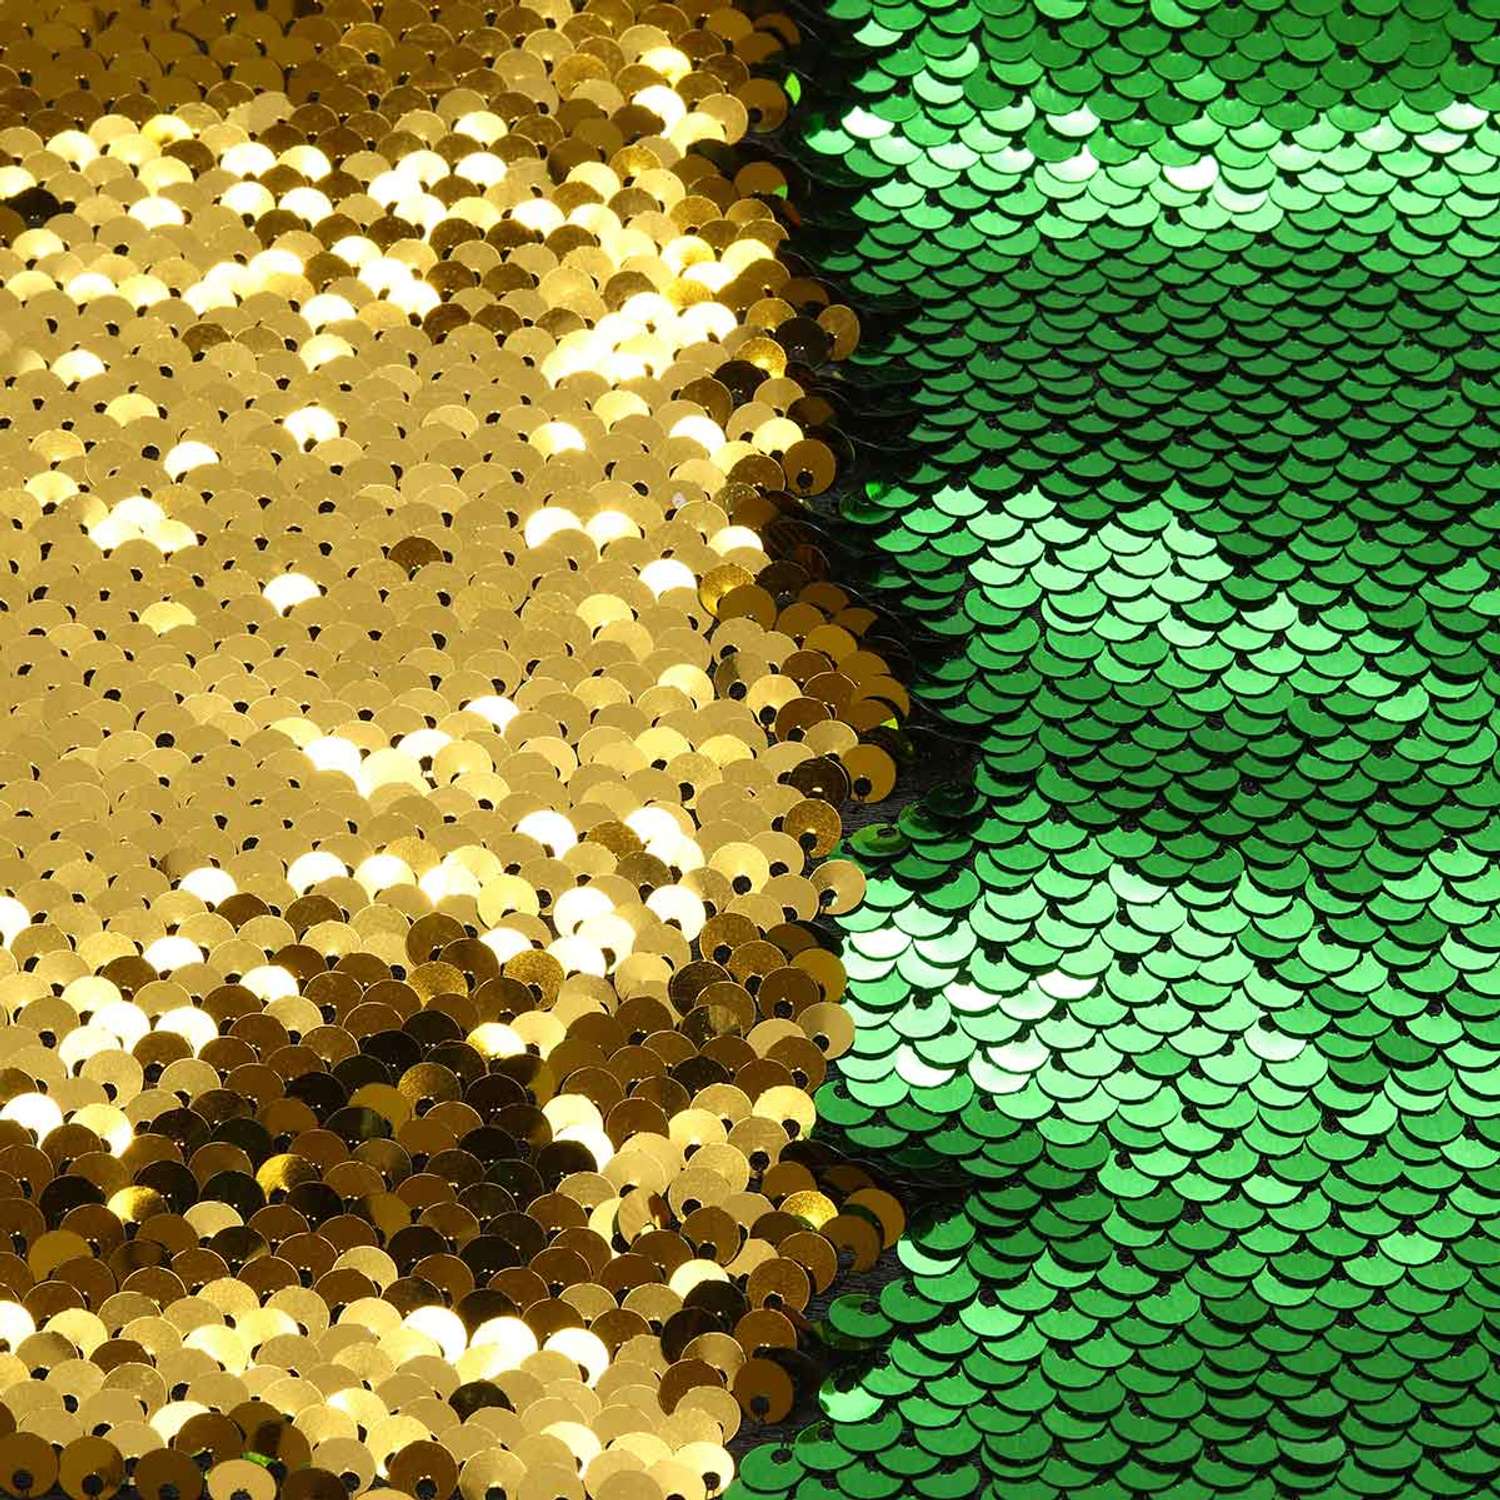 Ткань Astra Craft с двухсторонними пайетками зеленый золото 65х50 см - фото 1